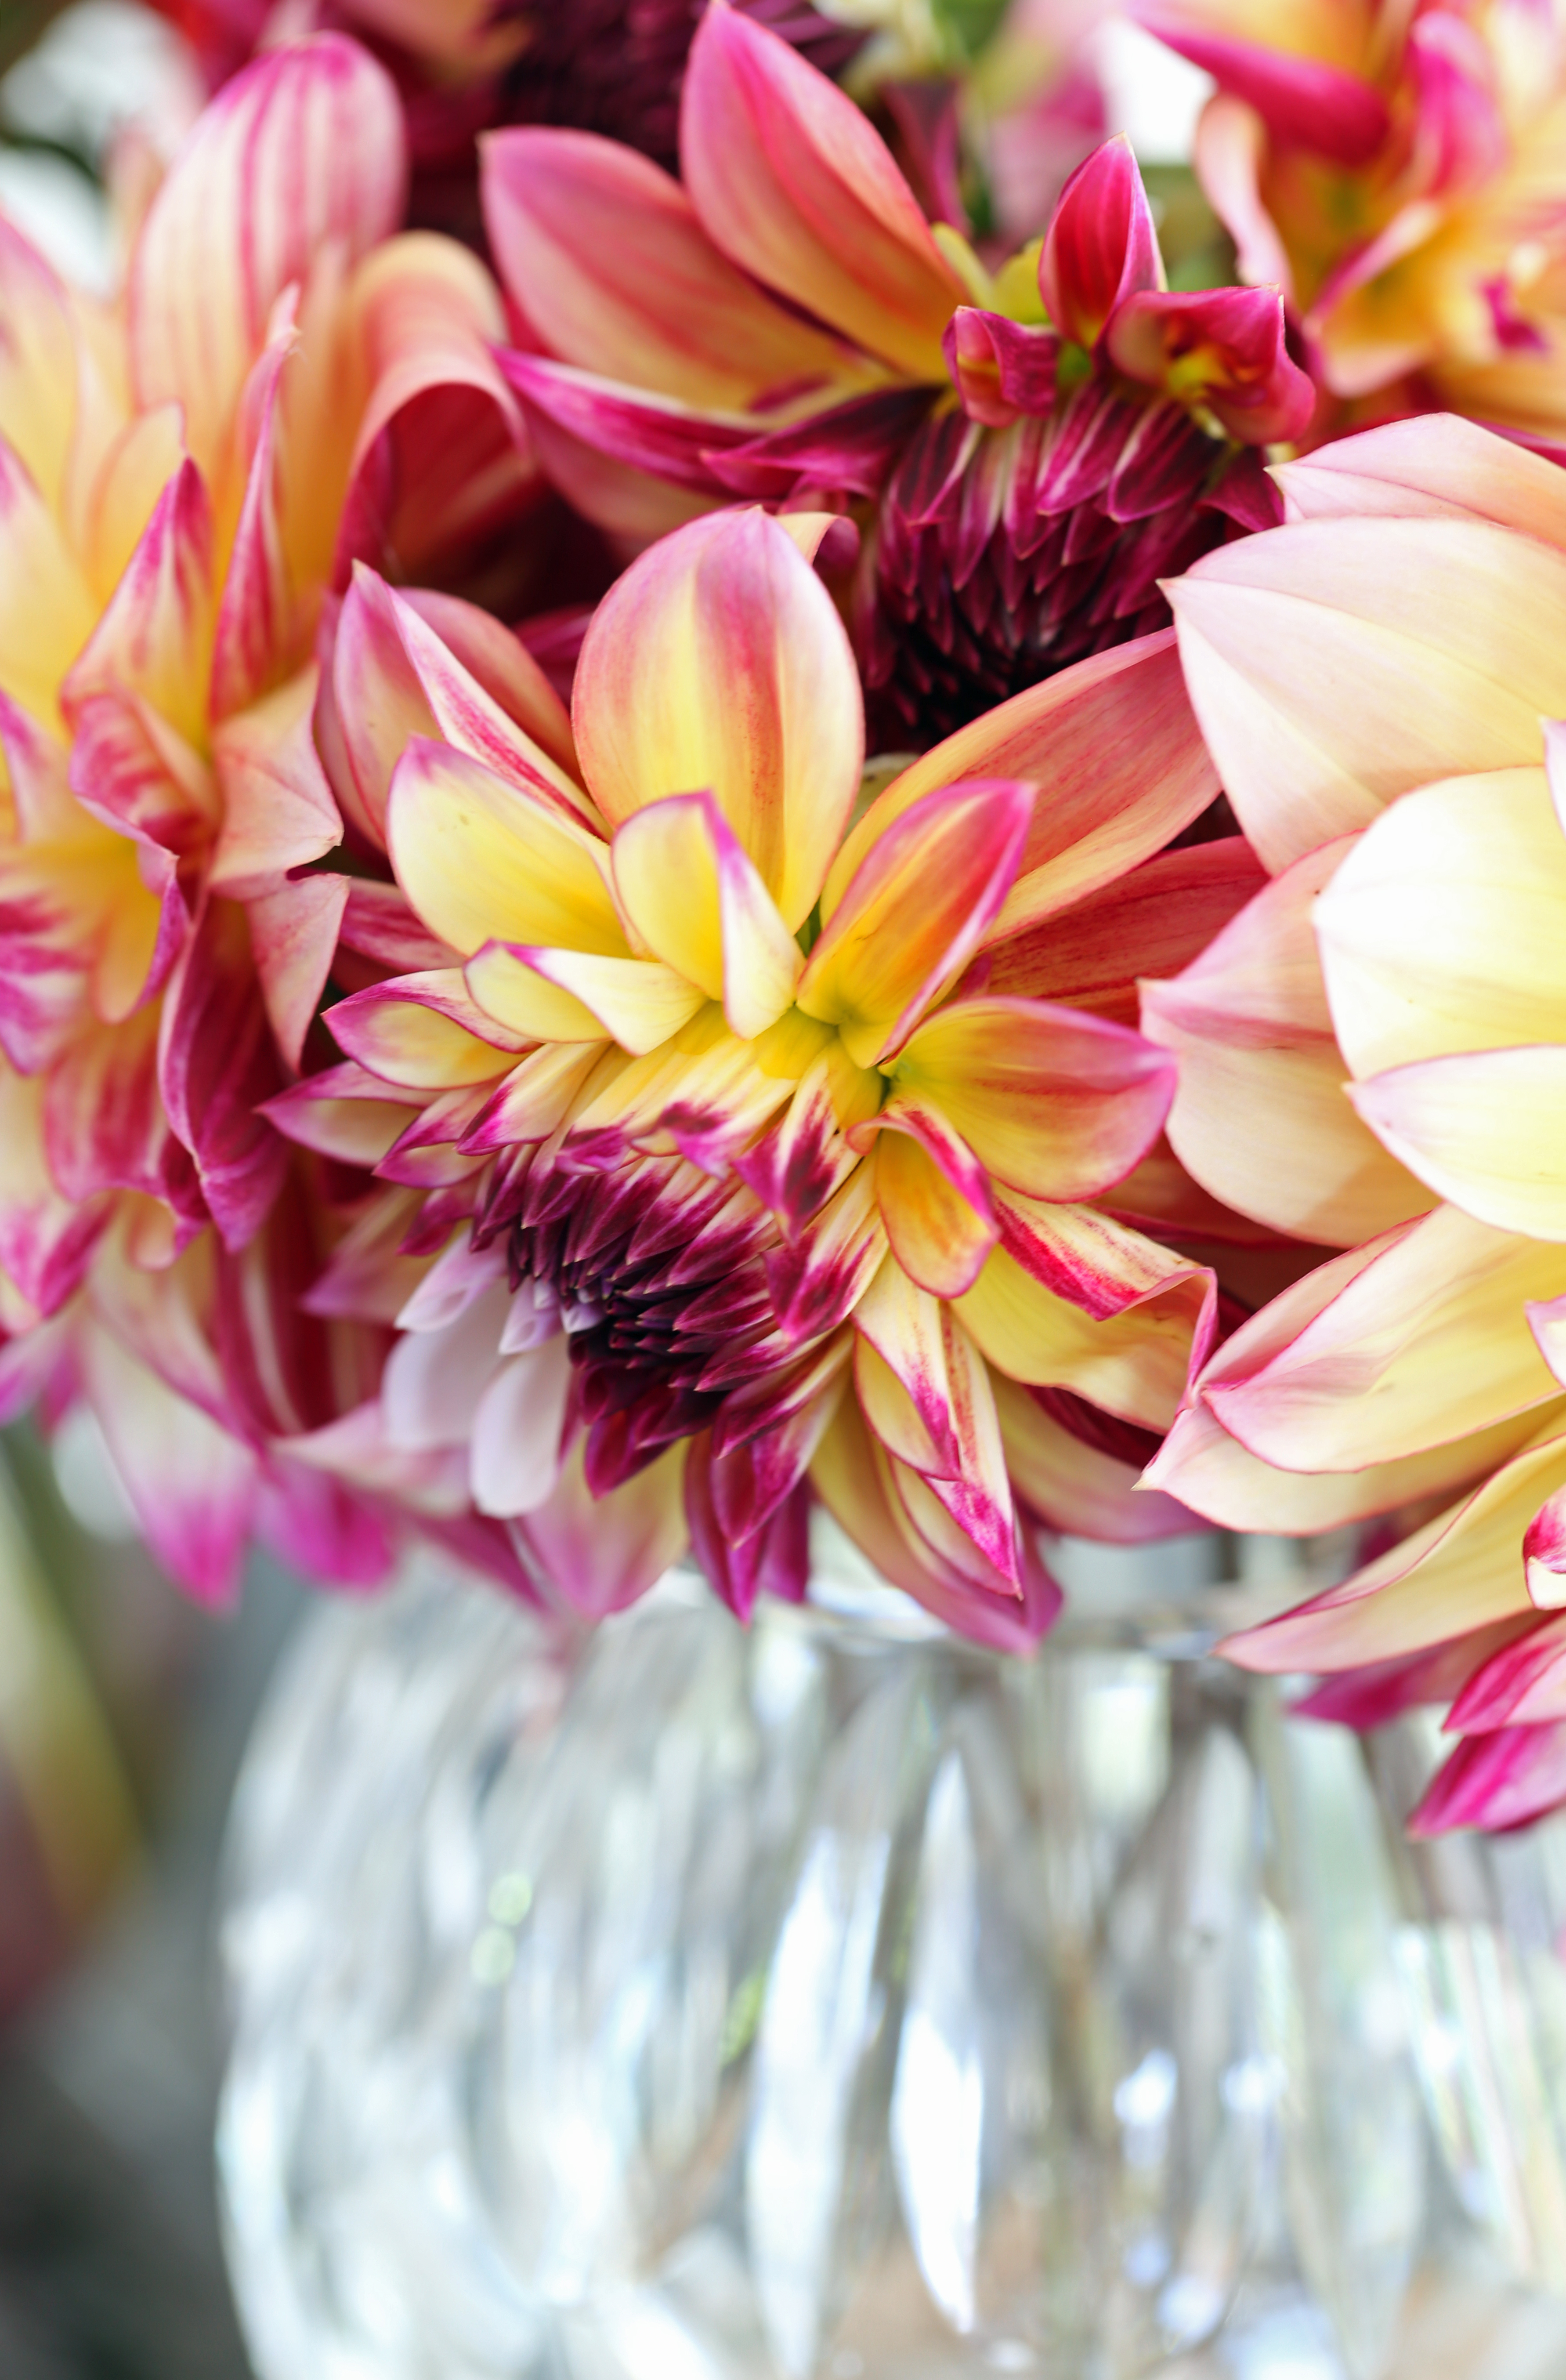 coup d'oeil du vendredi - delimoon.com - le bouquet de dahlias - comment ne pas être touché par la beauté des fleurs